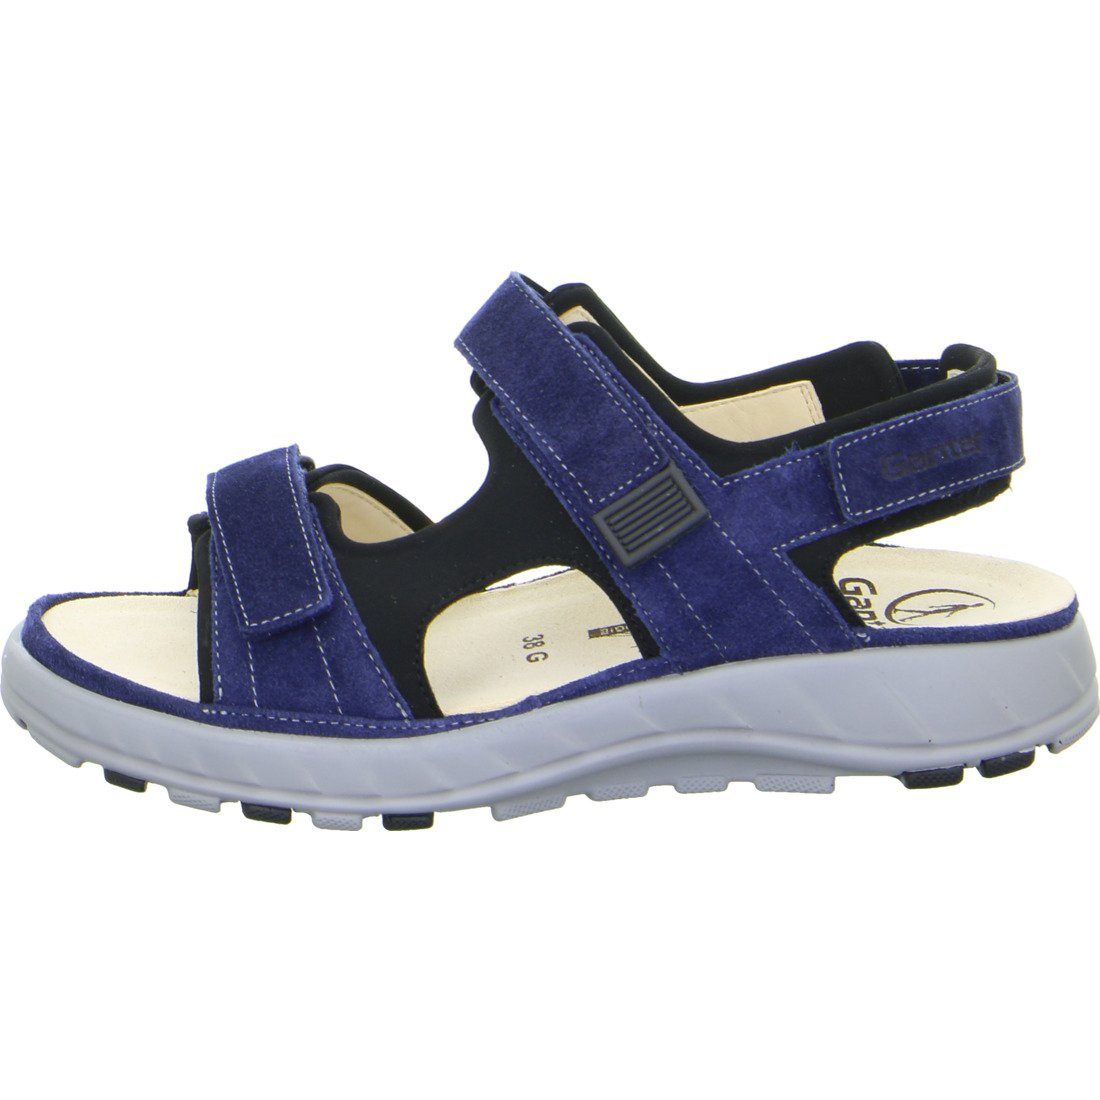 - Damen Schuhe, Ganter Velours 048814 Sandalette Geva Sandalette blau Ganter